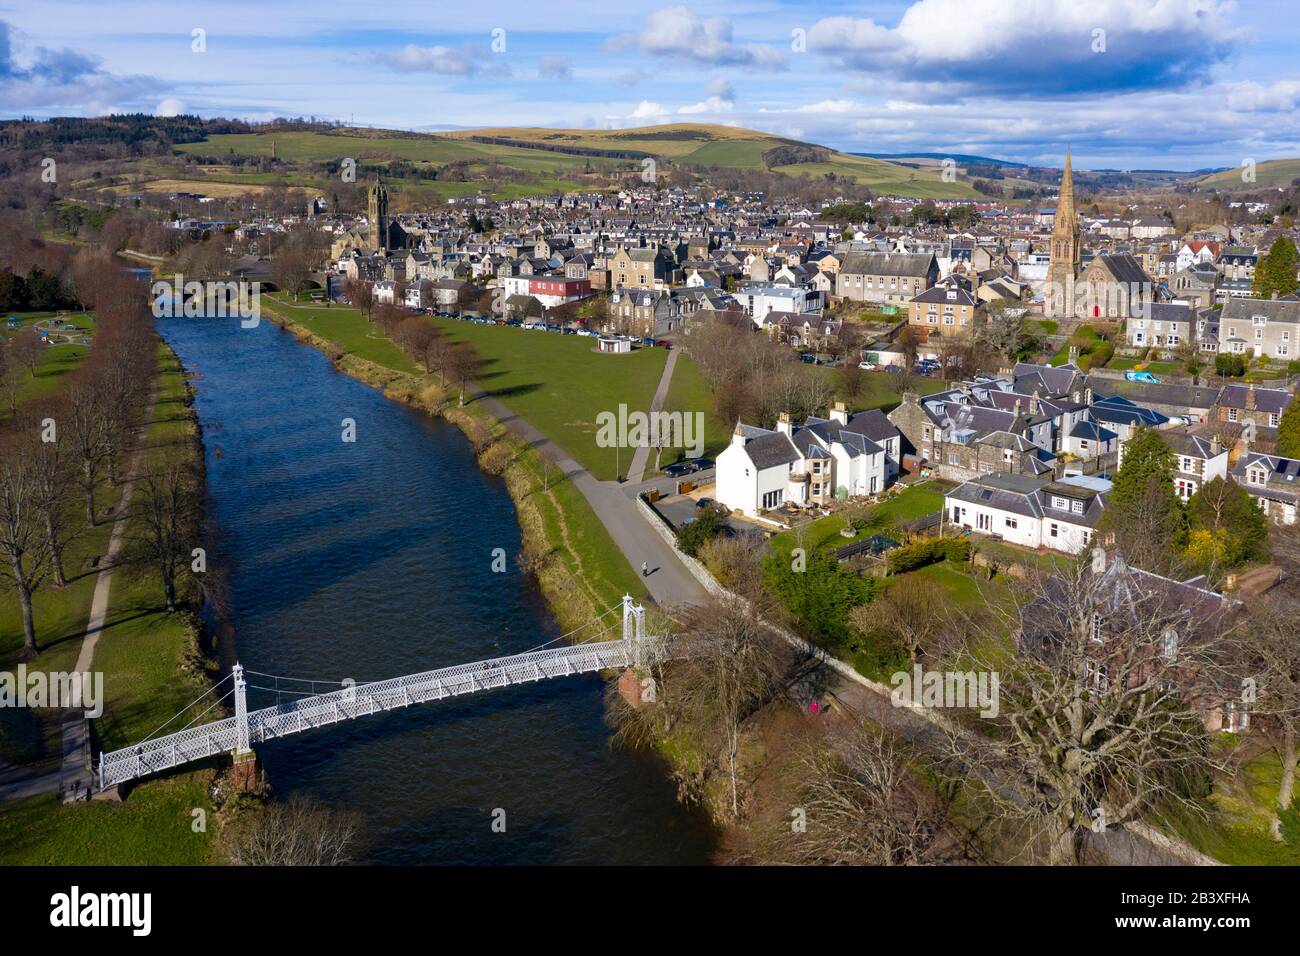 Vue aérienne de la rivière Tweed traversant la ville de Peebles aux frontières écossaises, Écosse, Royaume-Uni Banque D'Images